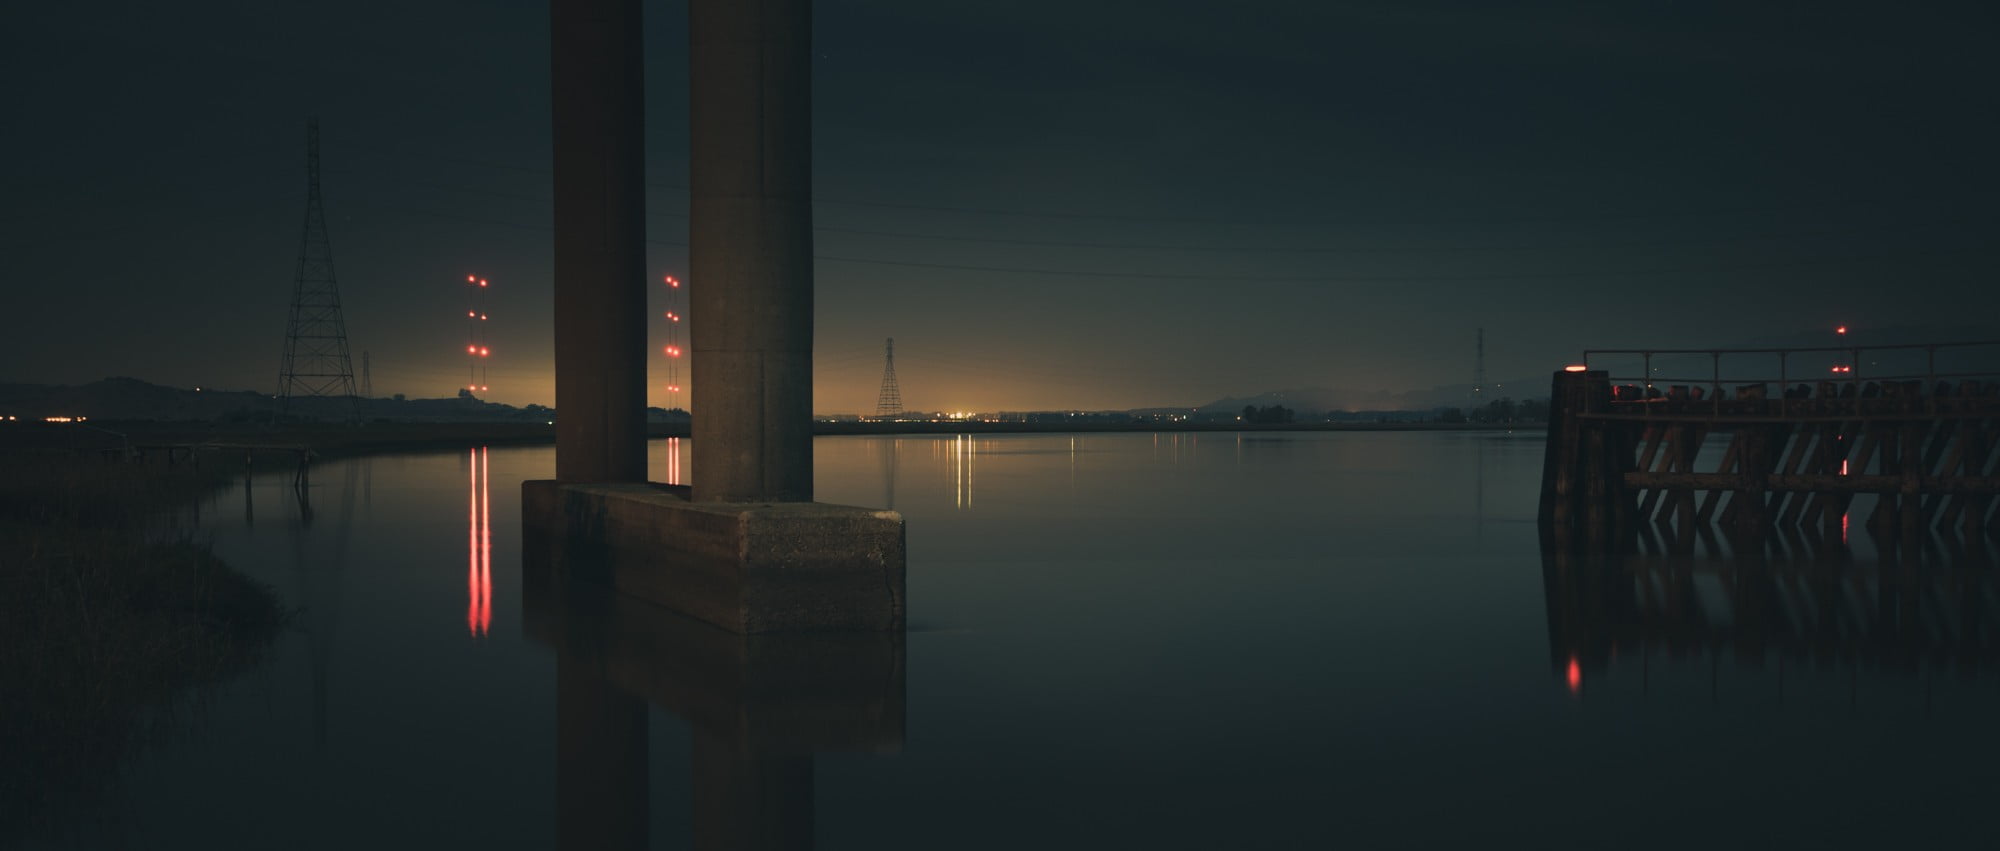 gray concrete post, architecture, bridge, lights, river